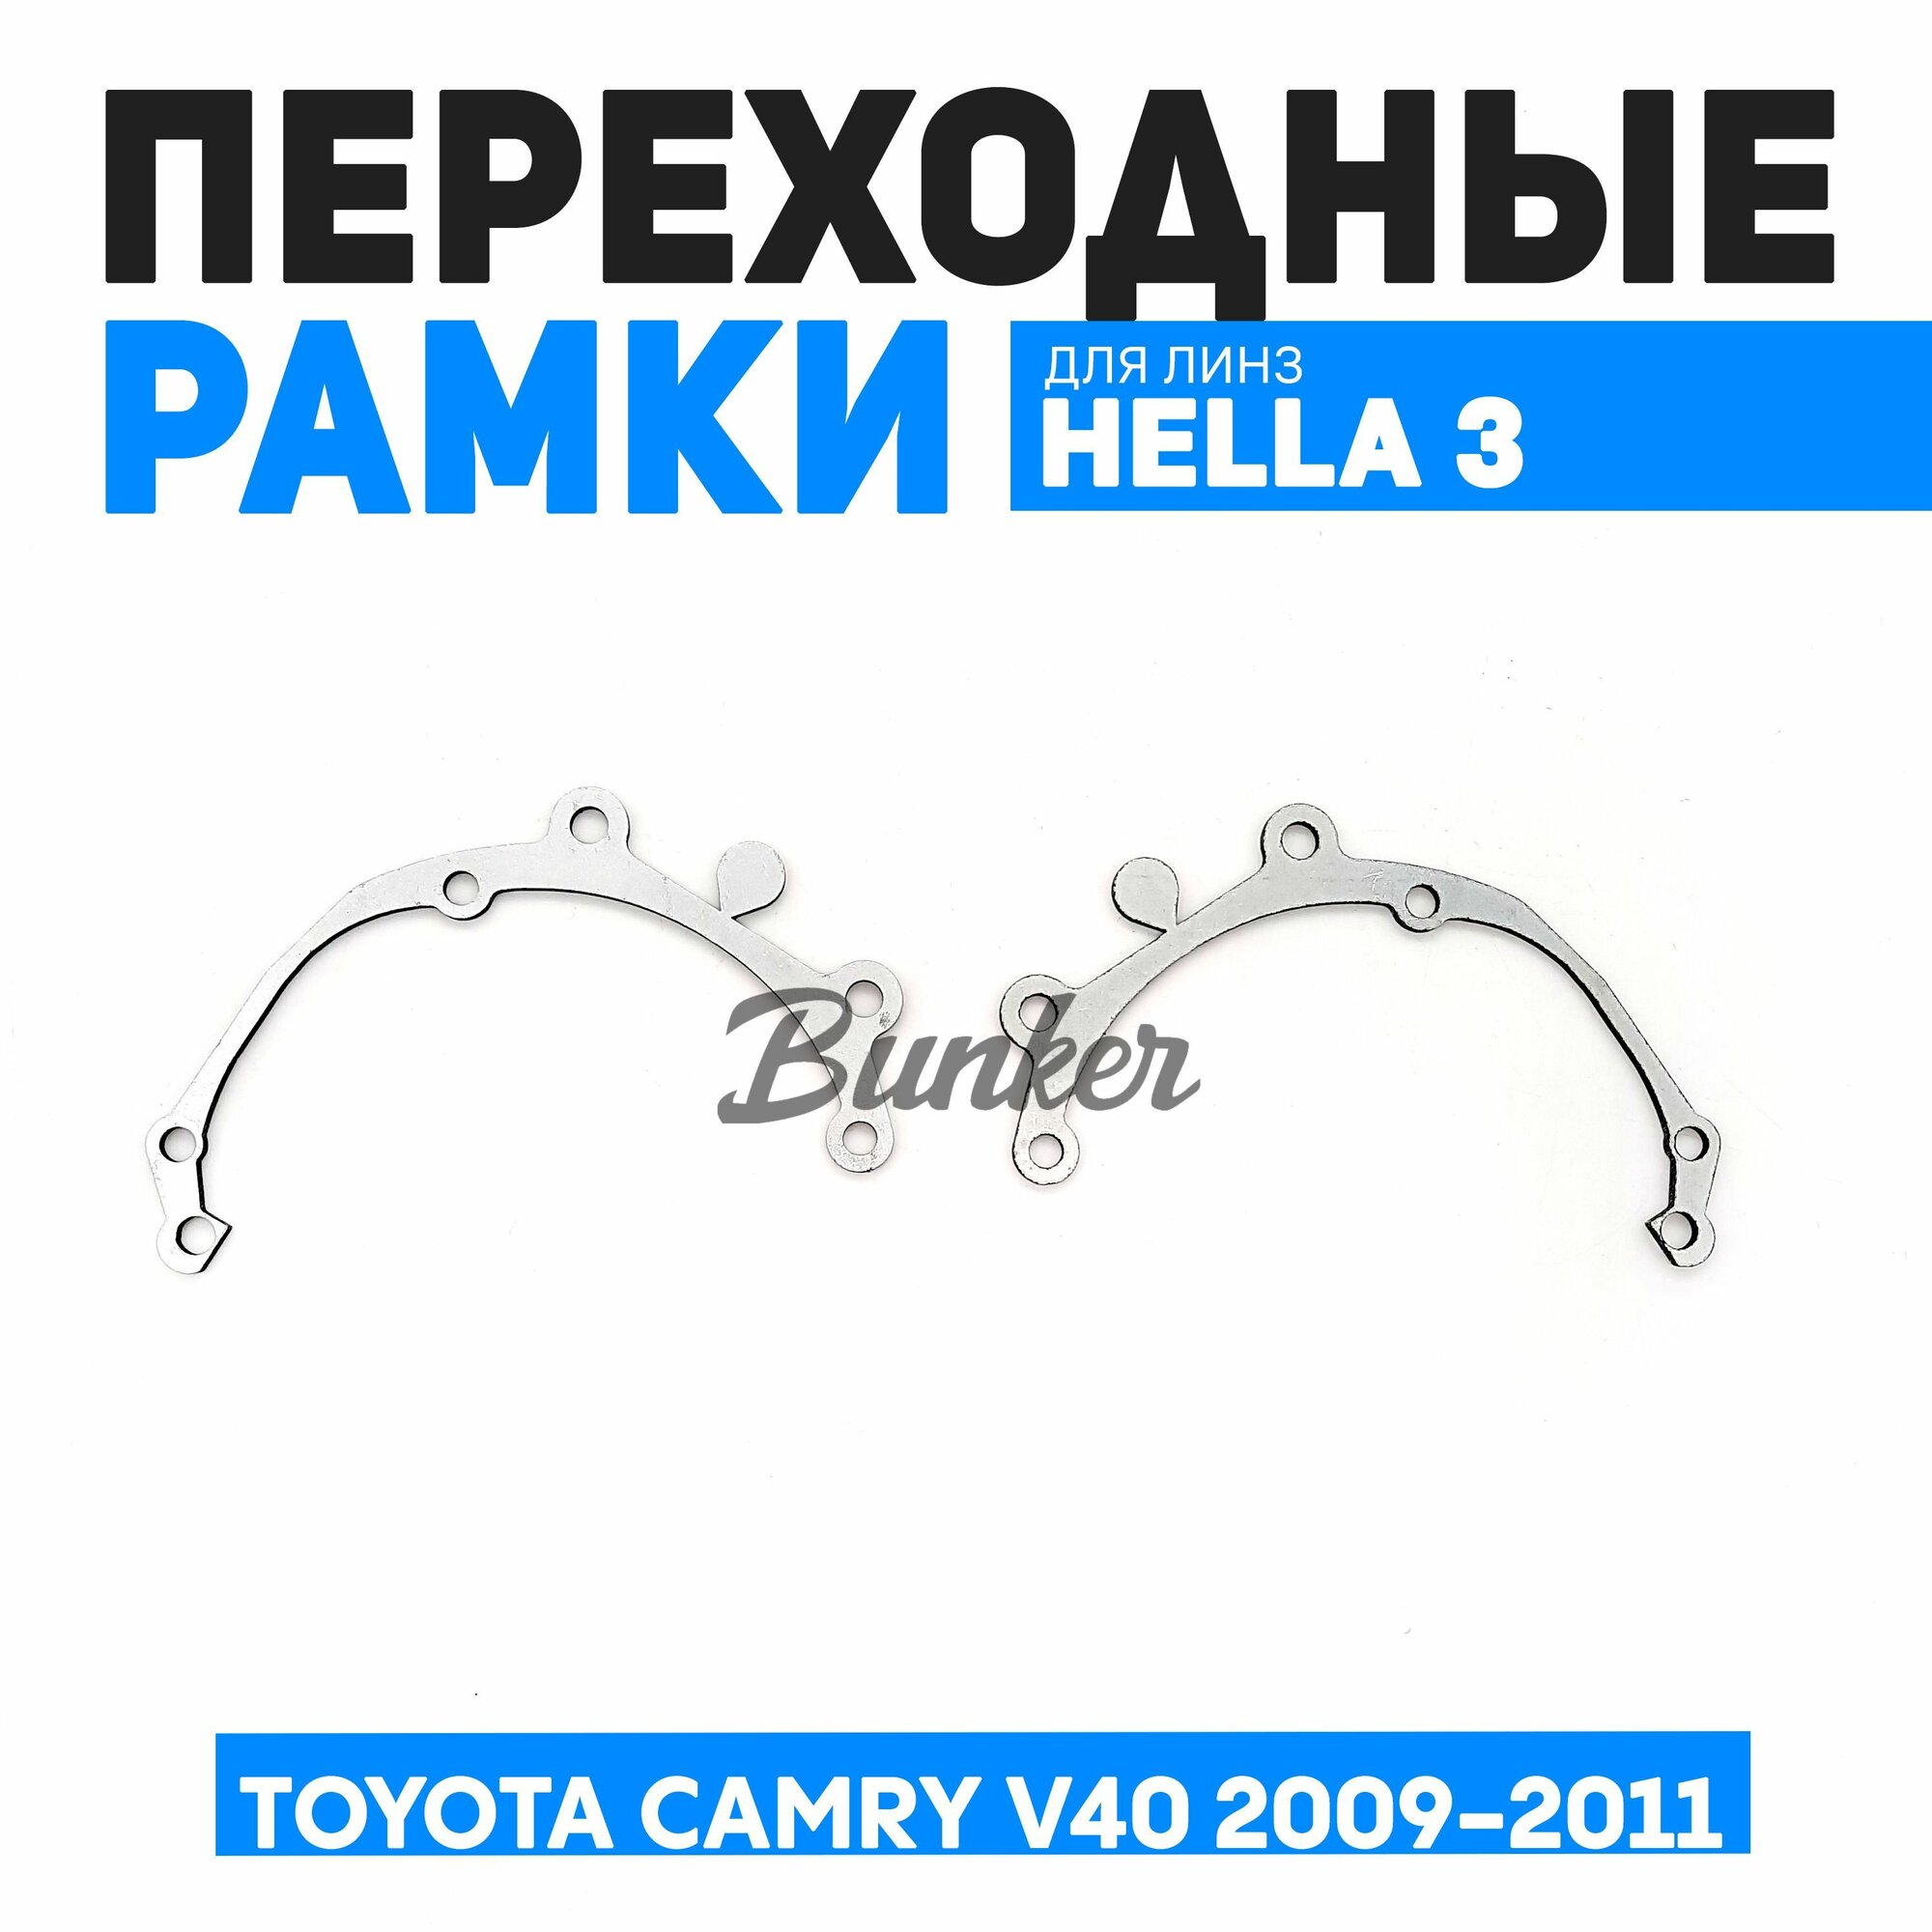 Переходные рамки для замены линз Toyota Camry V40 рестайлинг 2009-2011